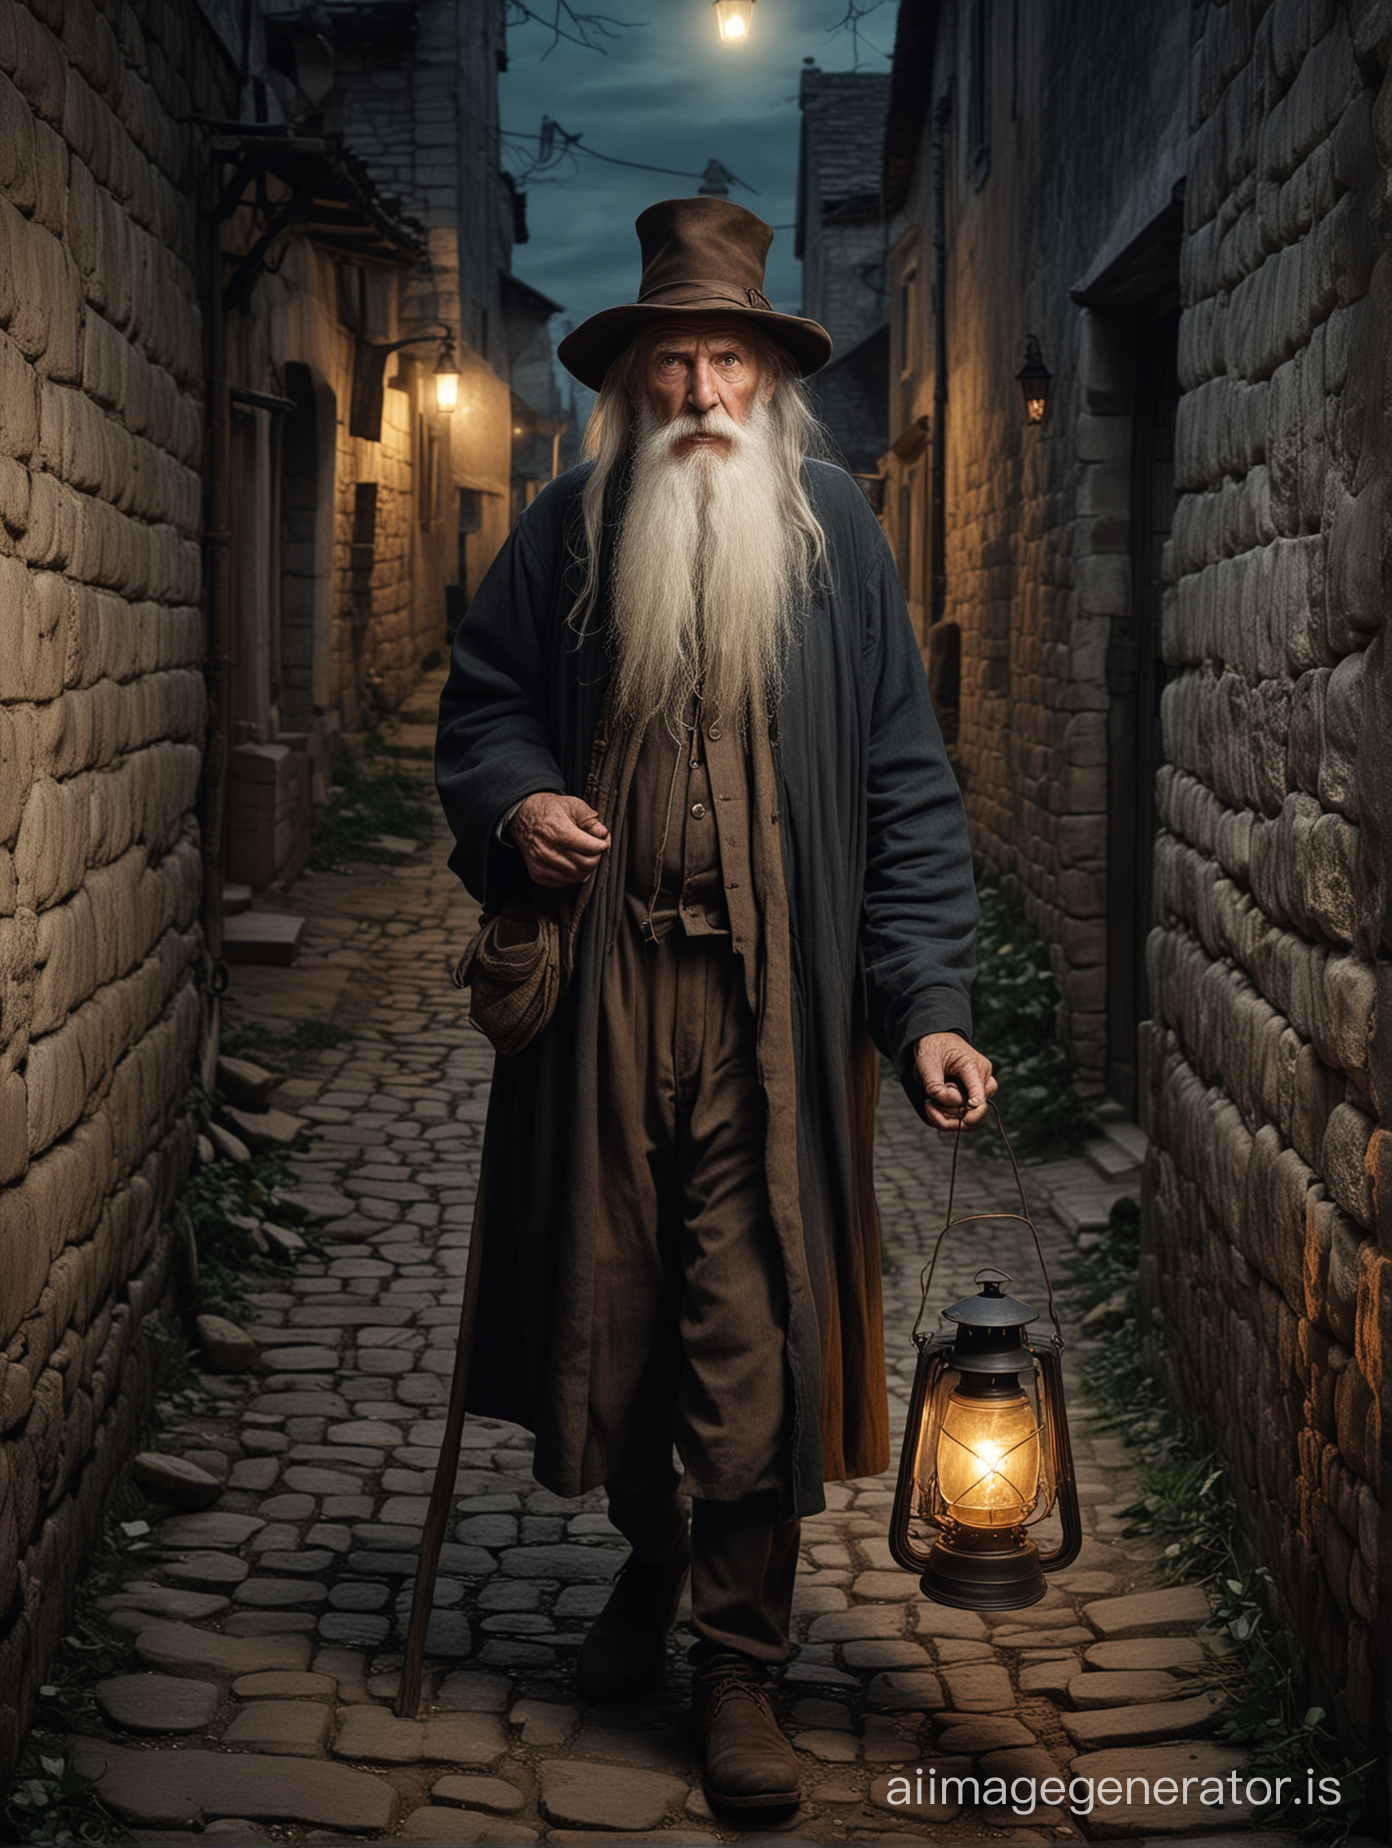 un vieil homme, grand, avec une très longue barbe blanche, portant un chapeau, l'air méchant, tenant une vieille lanternee allumée en 1850, il marche dans une ruelle sombre d'un village médiéval, la photo est en couleurs
